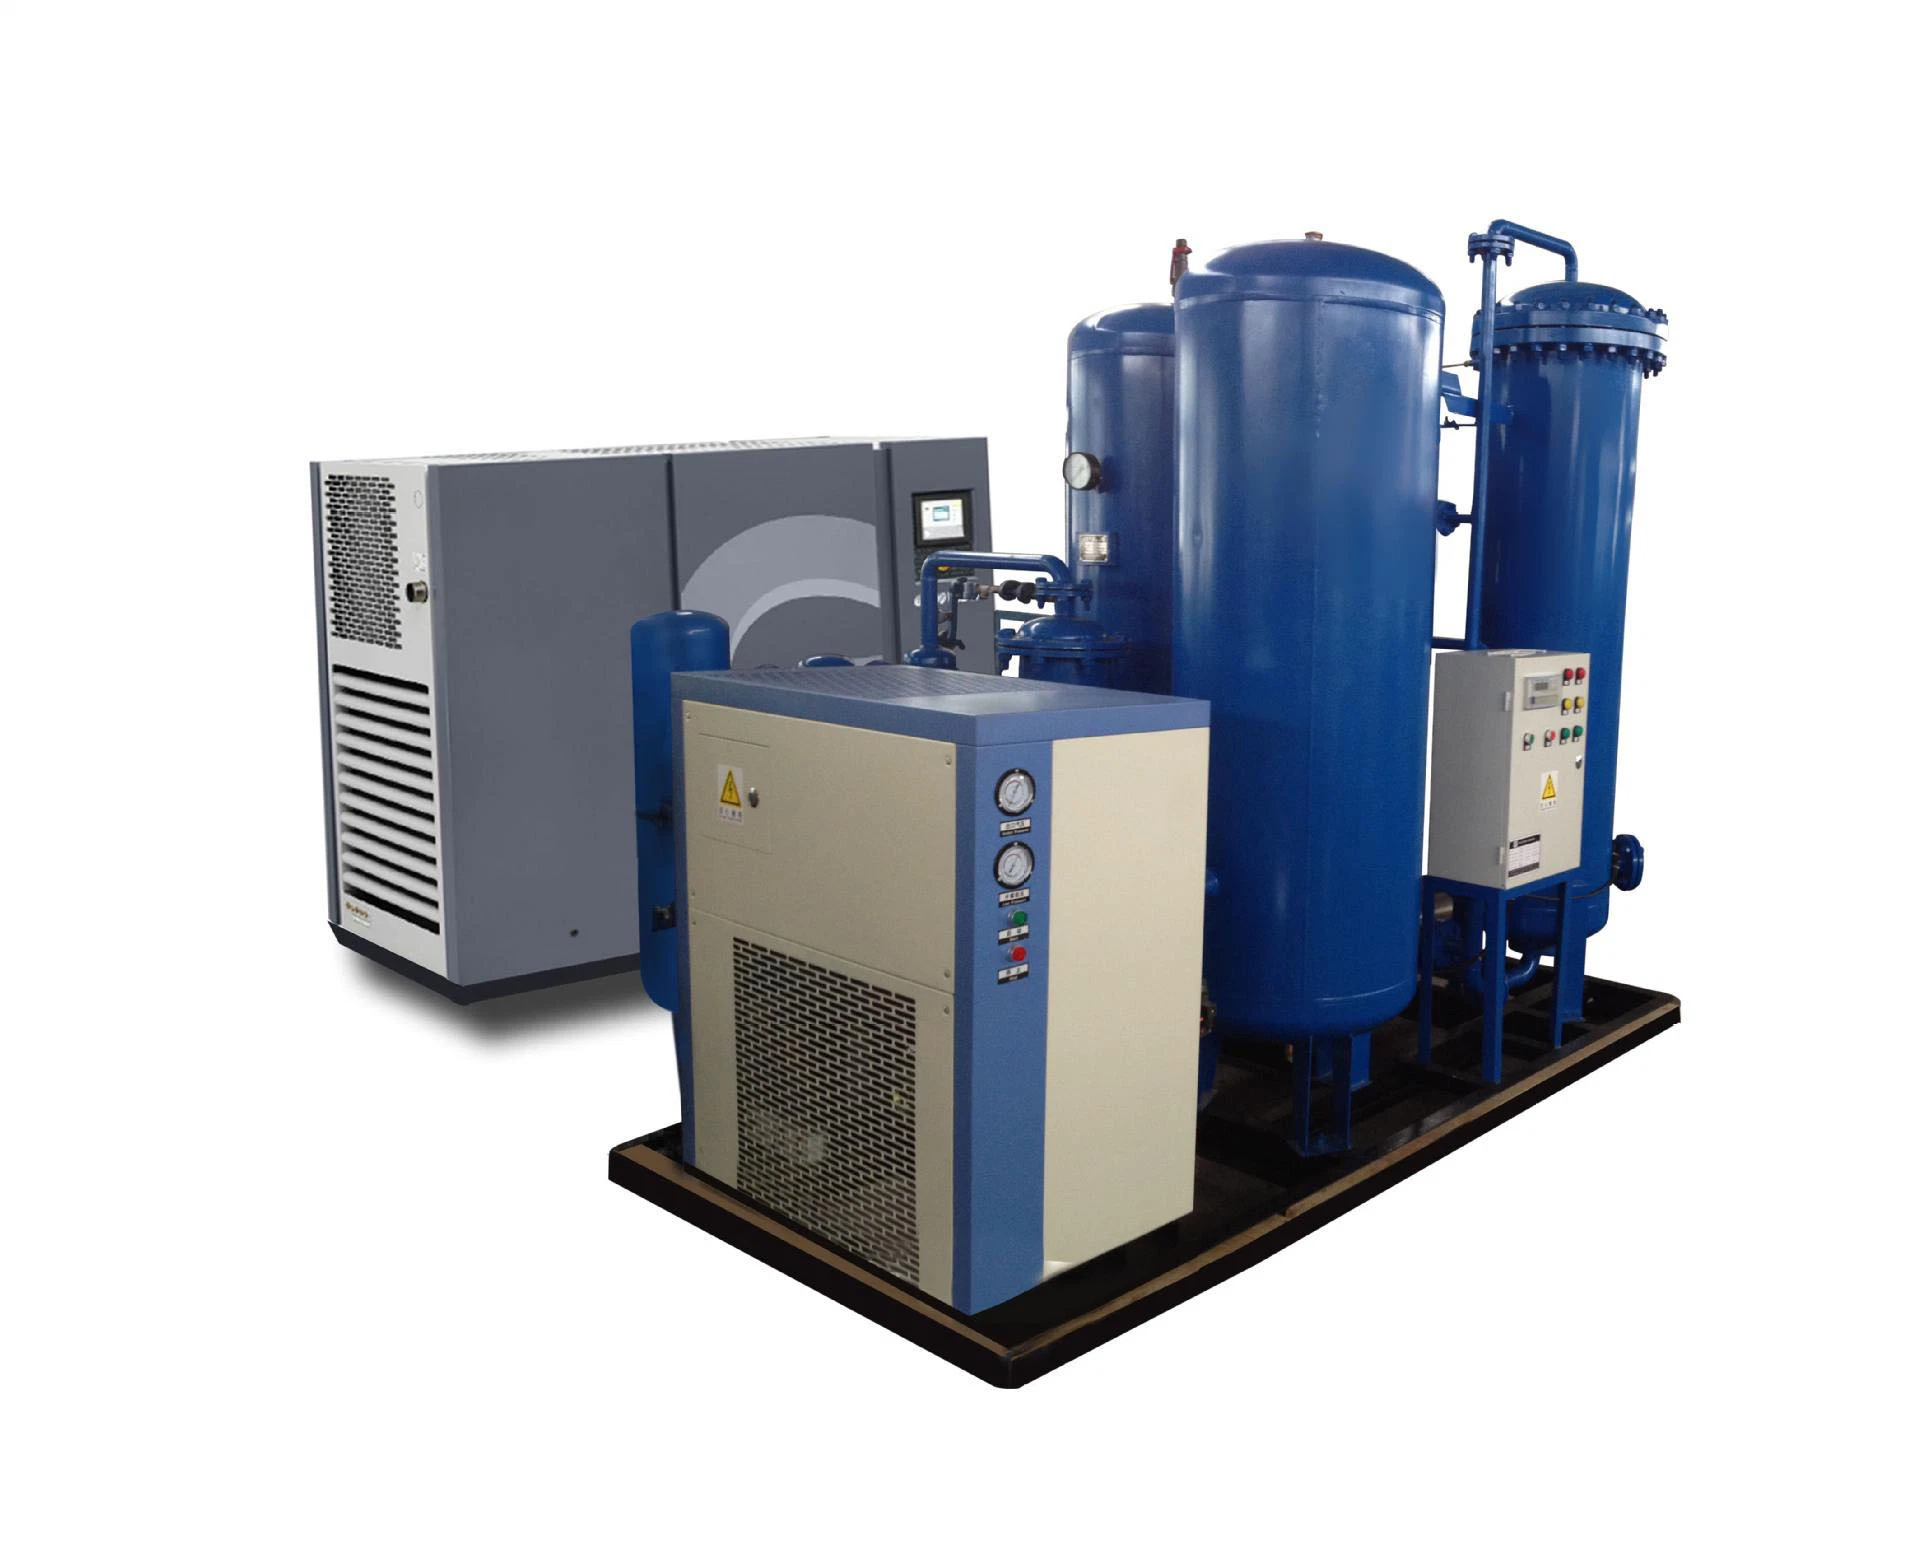 PSA-Sauerstoffgenerator für Krankenhaus- und Industrieanwendungen mit Booster